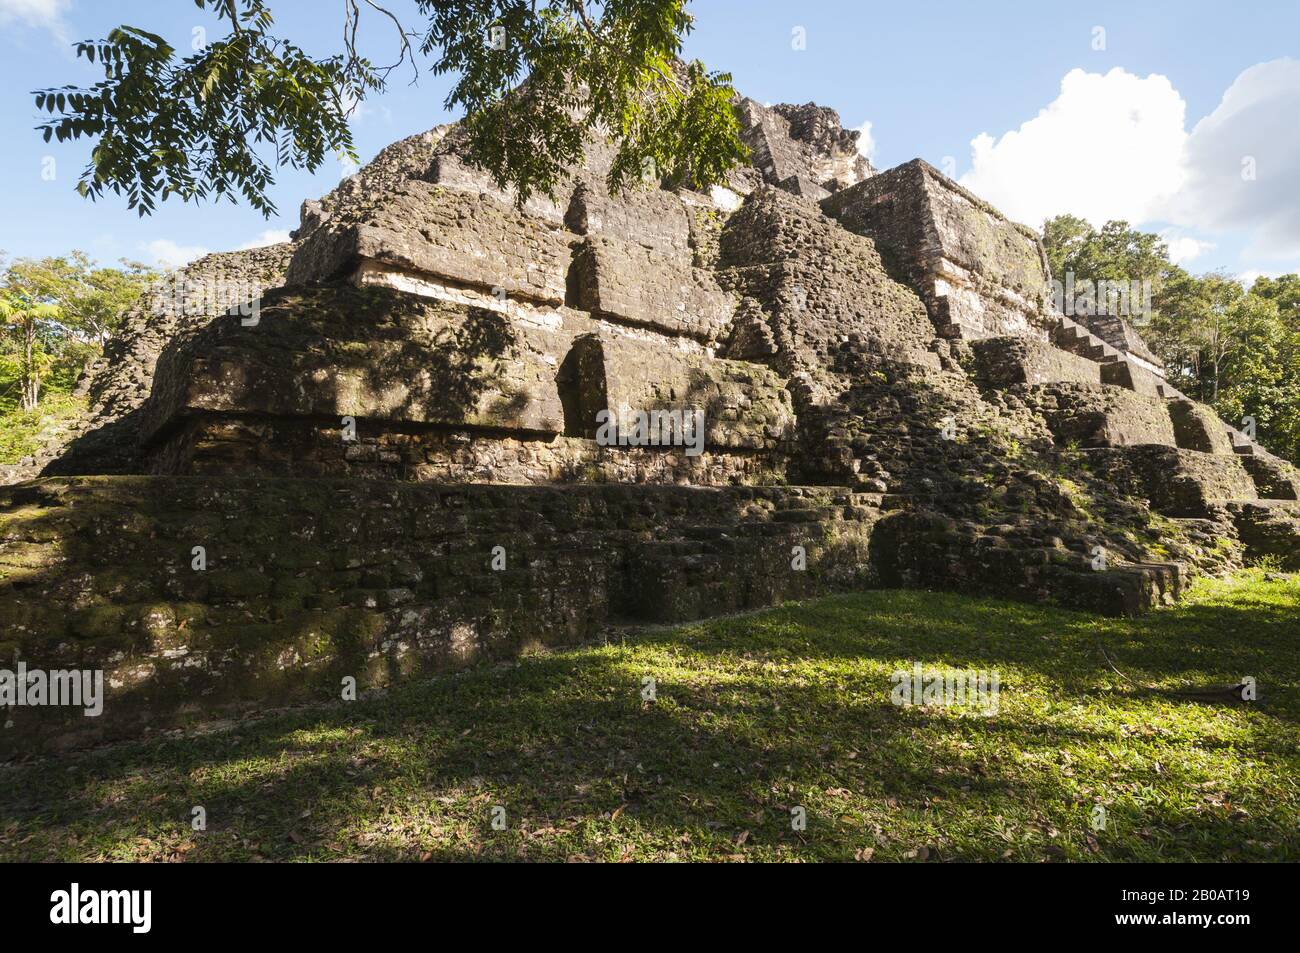 Guatemala, Parque Nacional Tikal, Mundo perdido, Pirámide del Mundo, 700 AC, más antiguo de Tikal, parcialmente excavado, arquitectura talud-tablero; Foto de stock